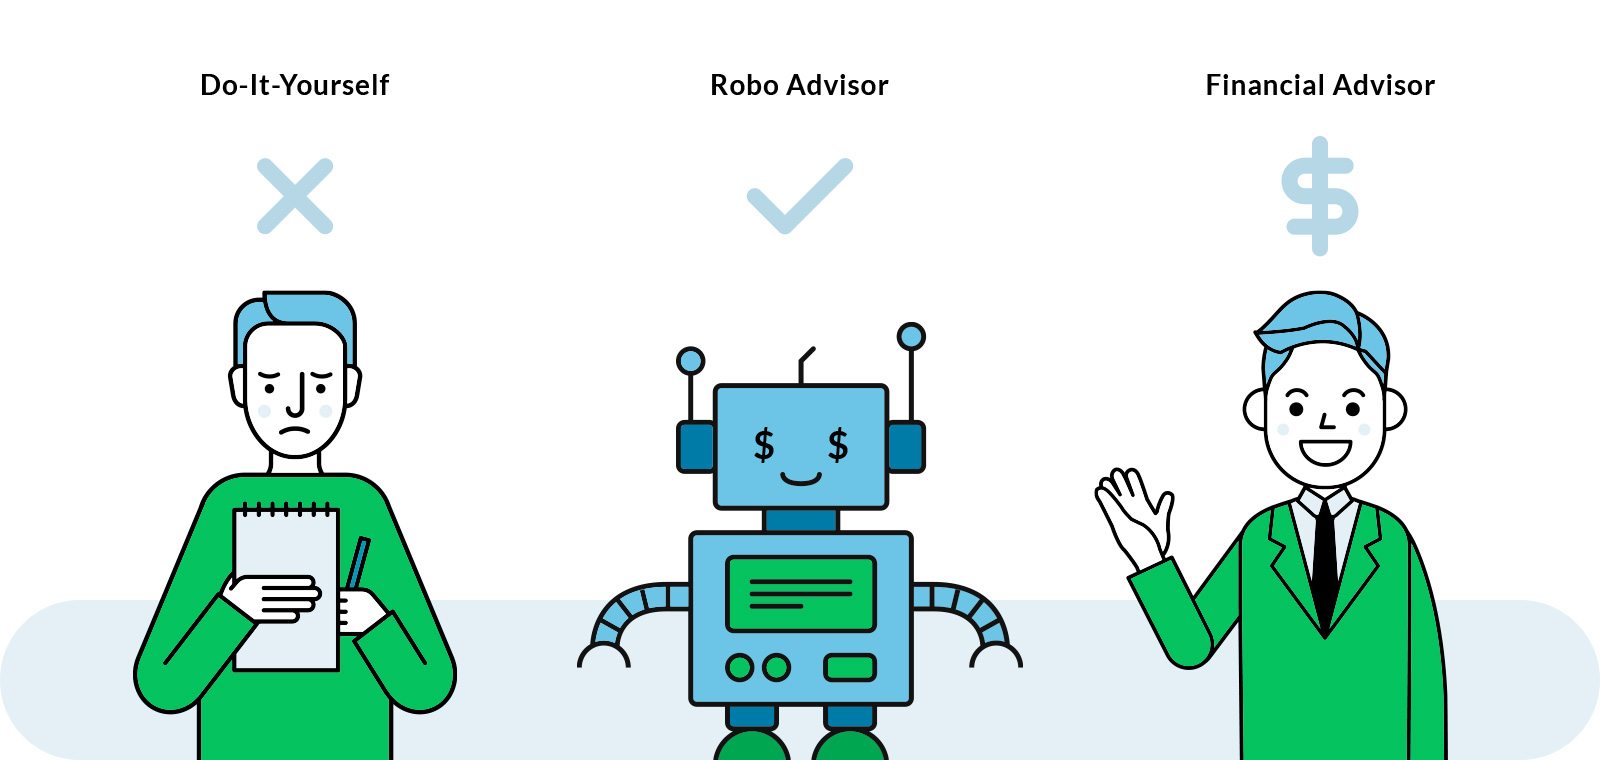  روبو-أدفيزور: مستشار روبوت للتخطيط المالي